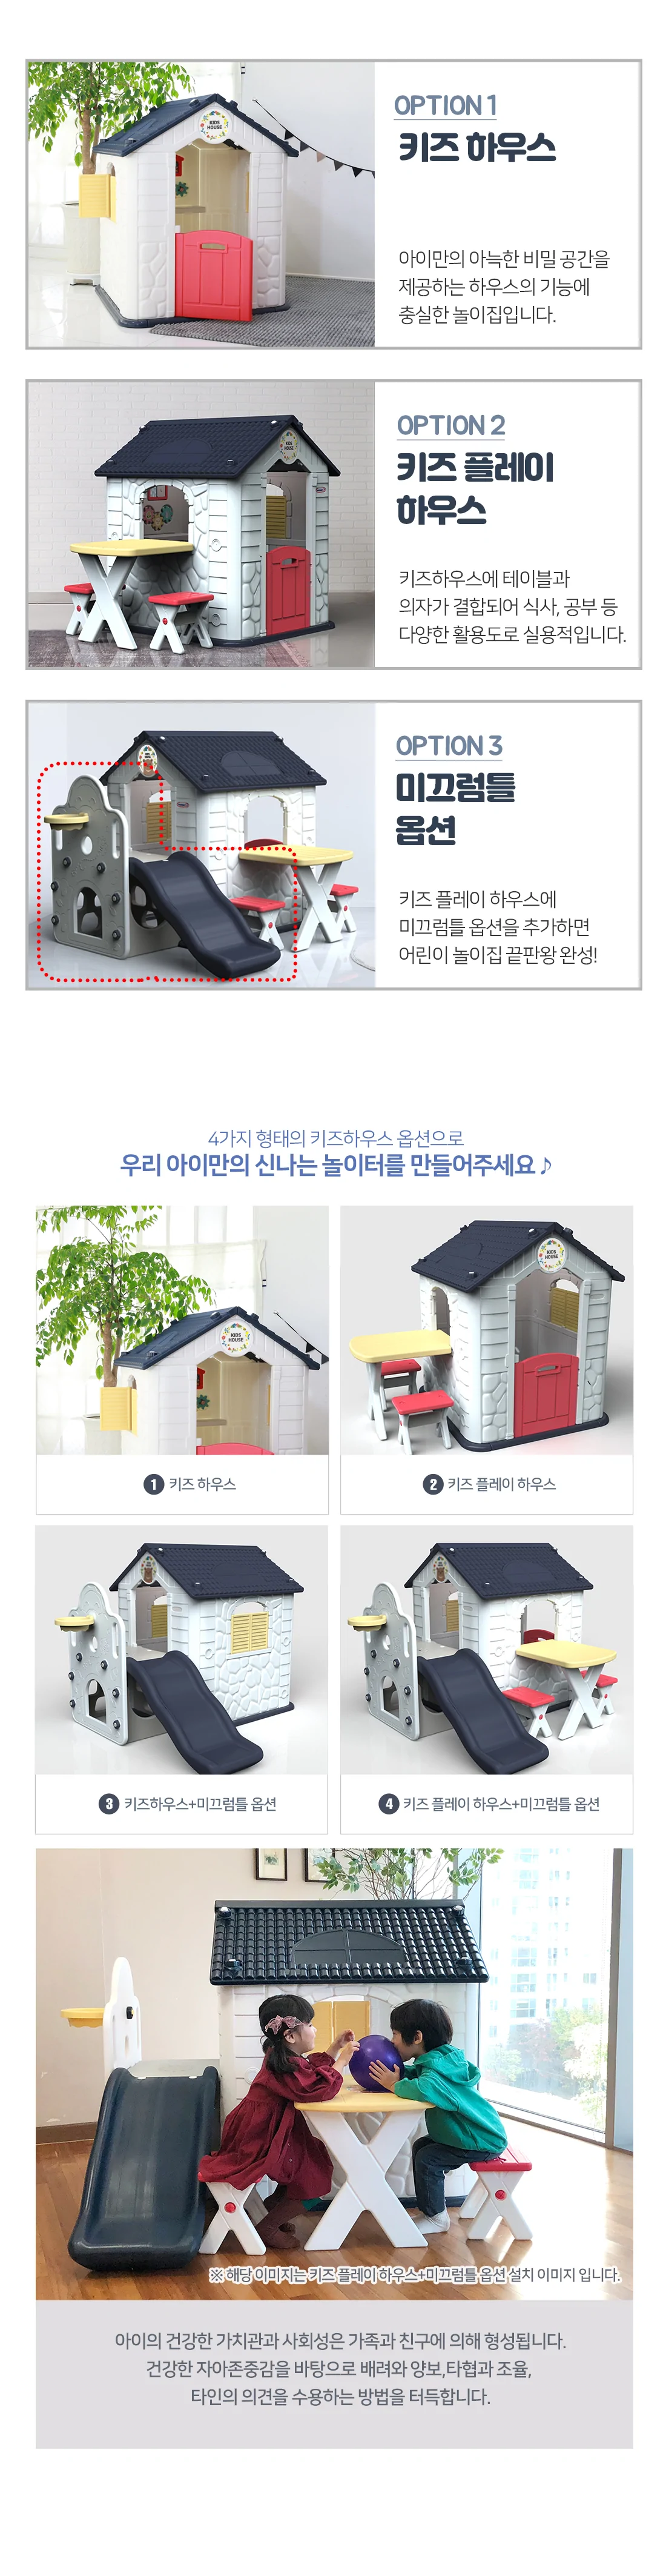 韓國 Haenim Toy 歡樂公園兒童屋